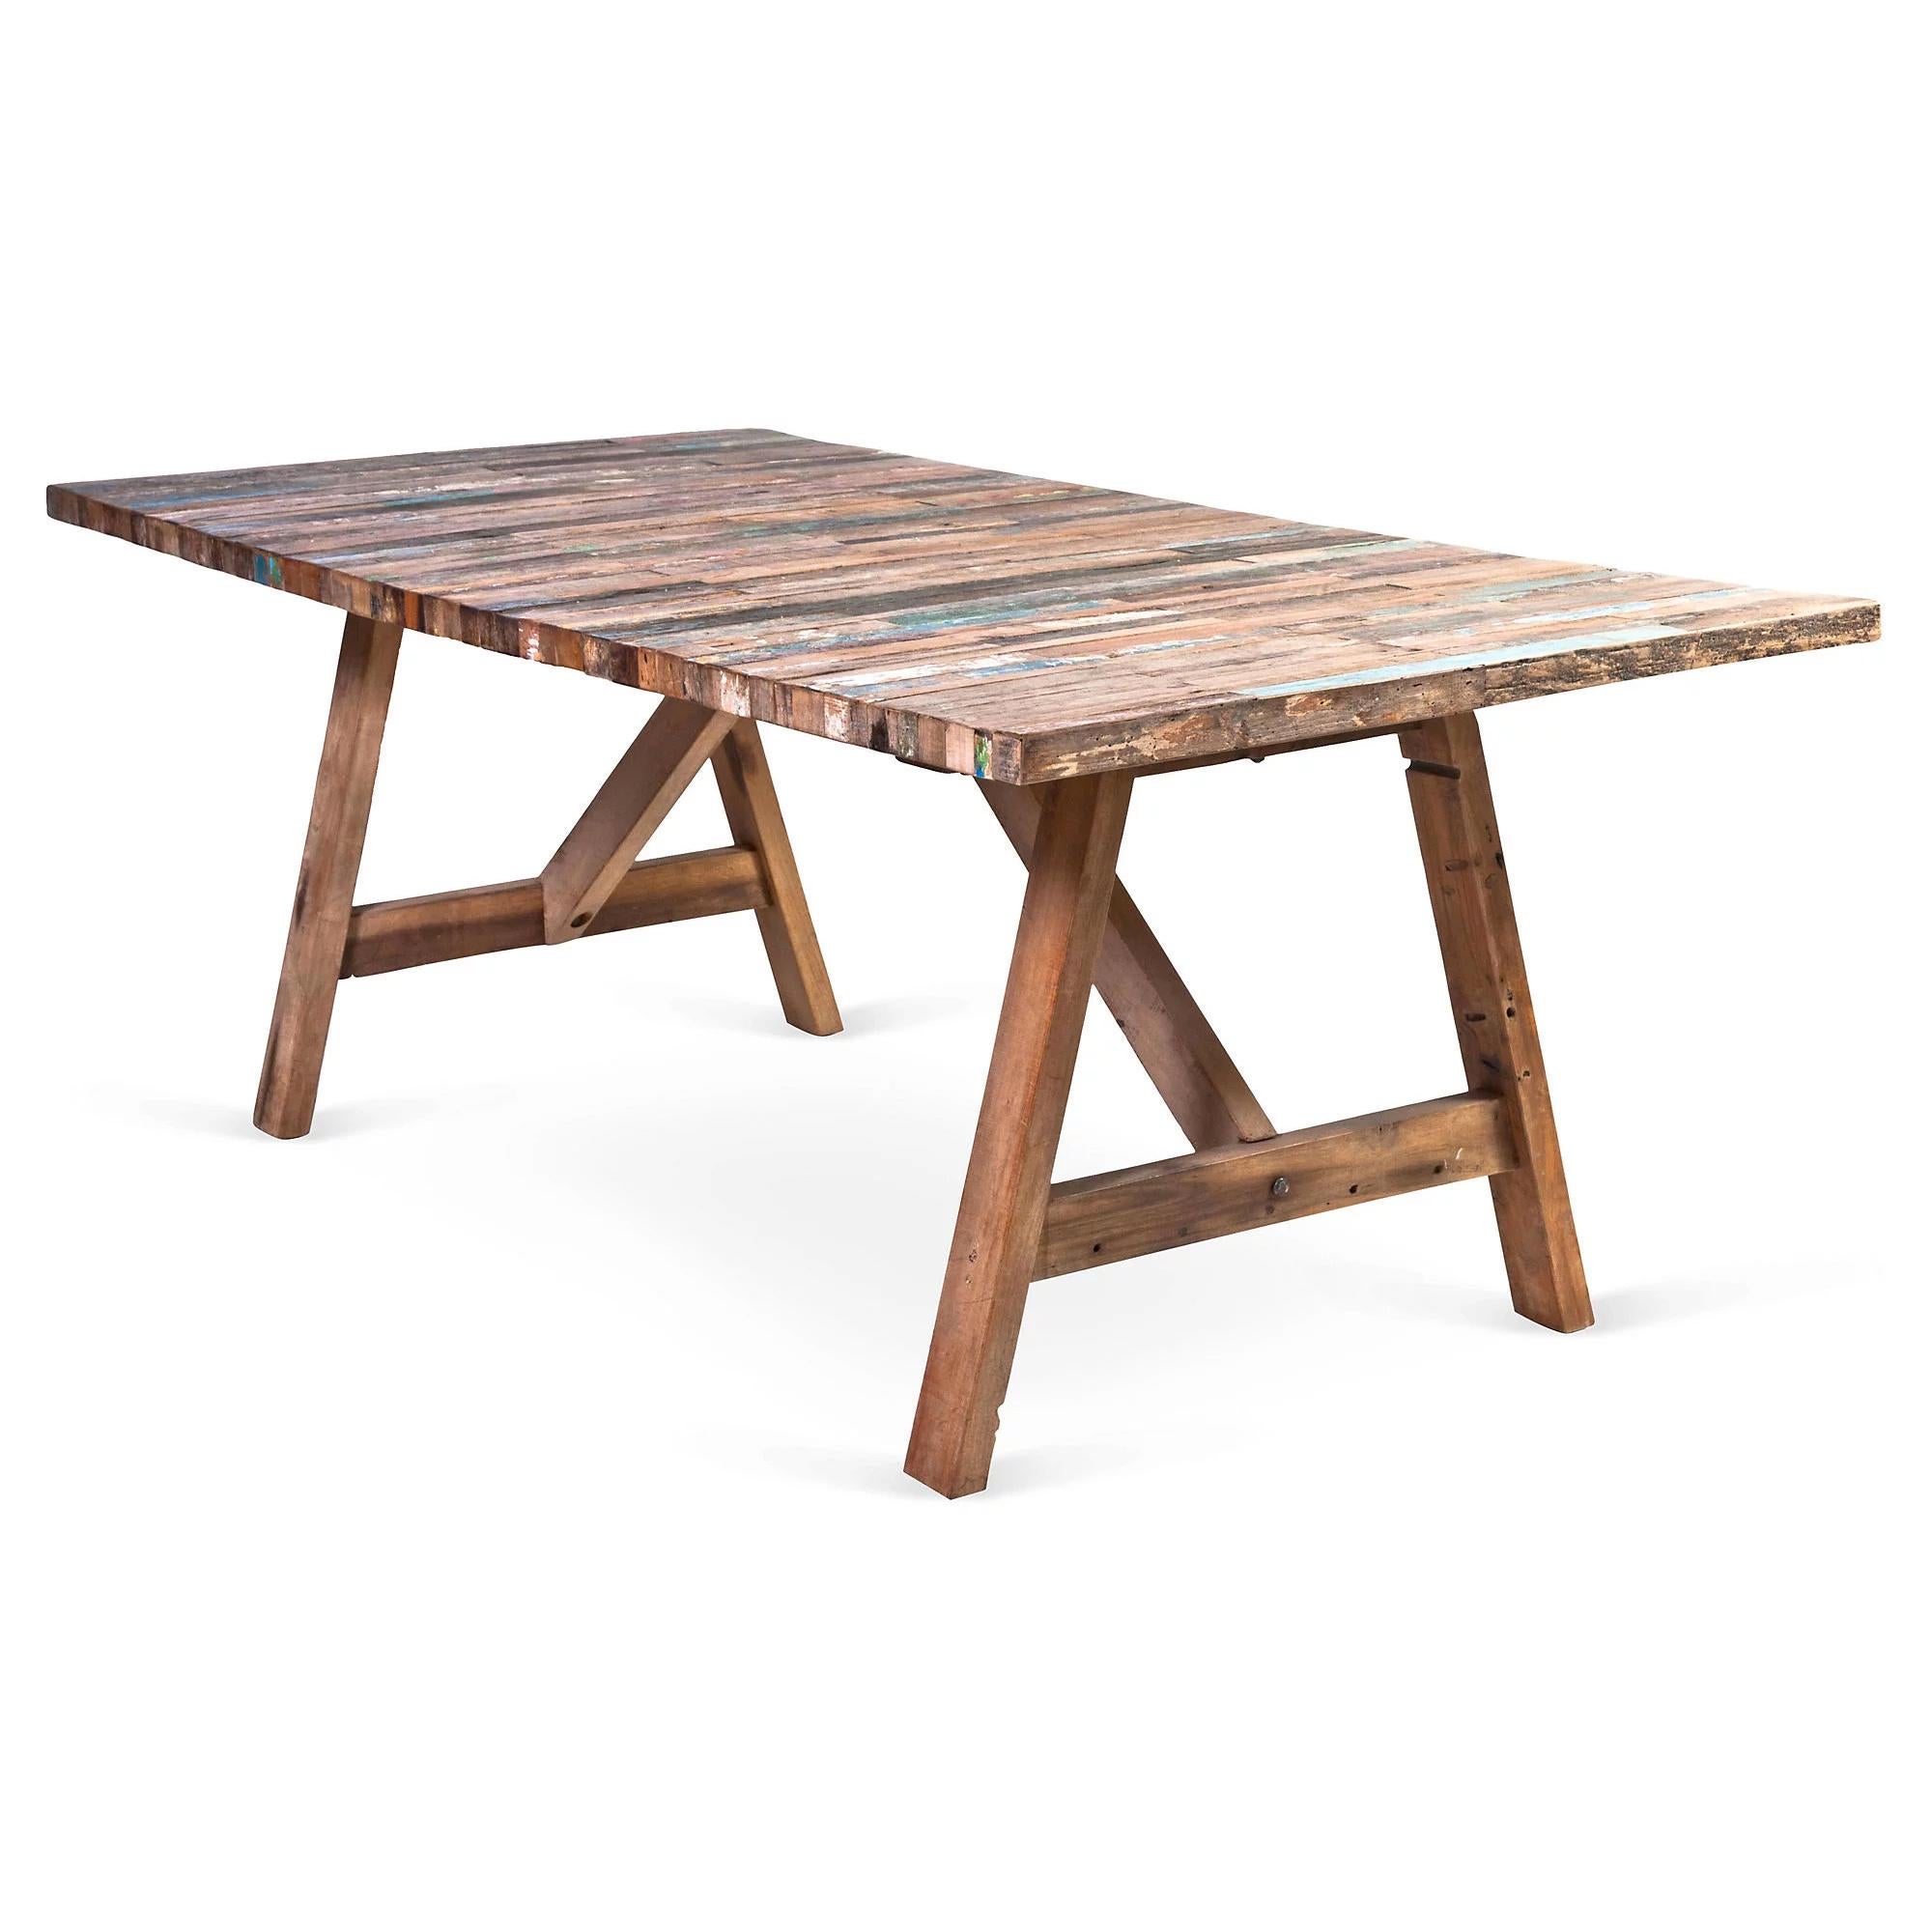 Fabriqué à partir d'un bateau de pêche récupéré à Gaines, le bois de cette table à tréteaux se patinera naturellement avec le temps ; une pièce unique faite de bois et d'acier, avec des couleurs brunes et bleues.